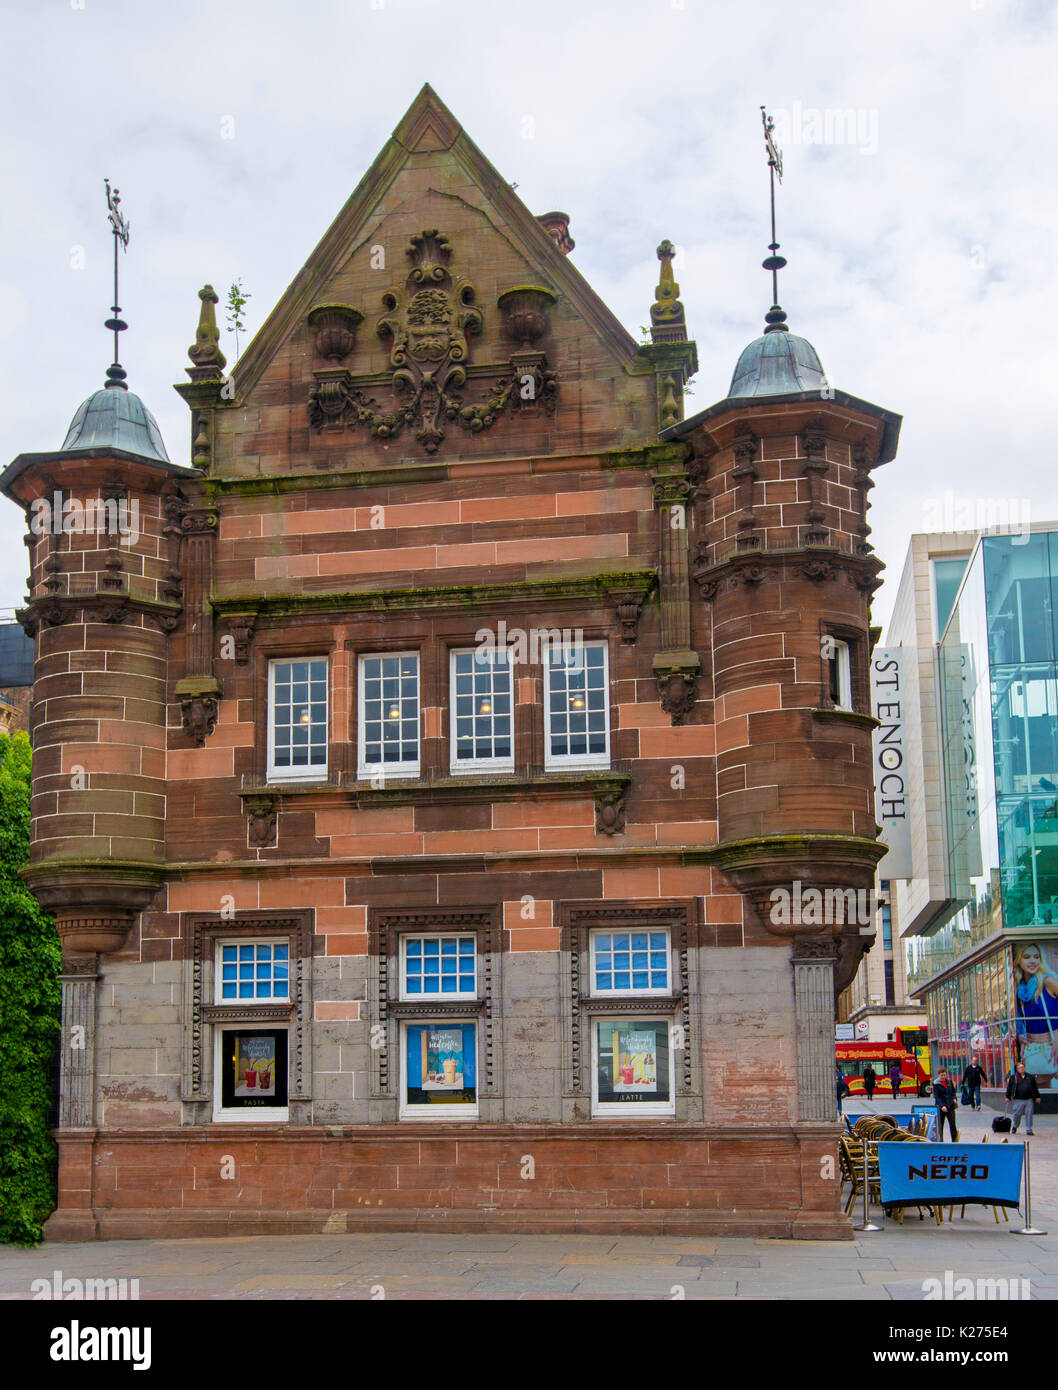 Élégant bâtiment historique, maintenant un café, autrefois à l'entrée de la station de métro St Enoch dans la ville de Glasgow, Ecosse Banque D'Images